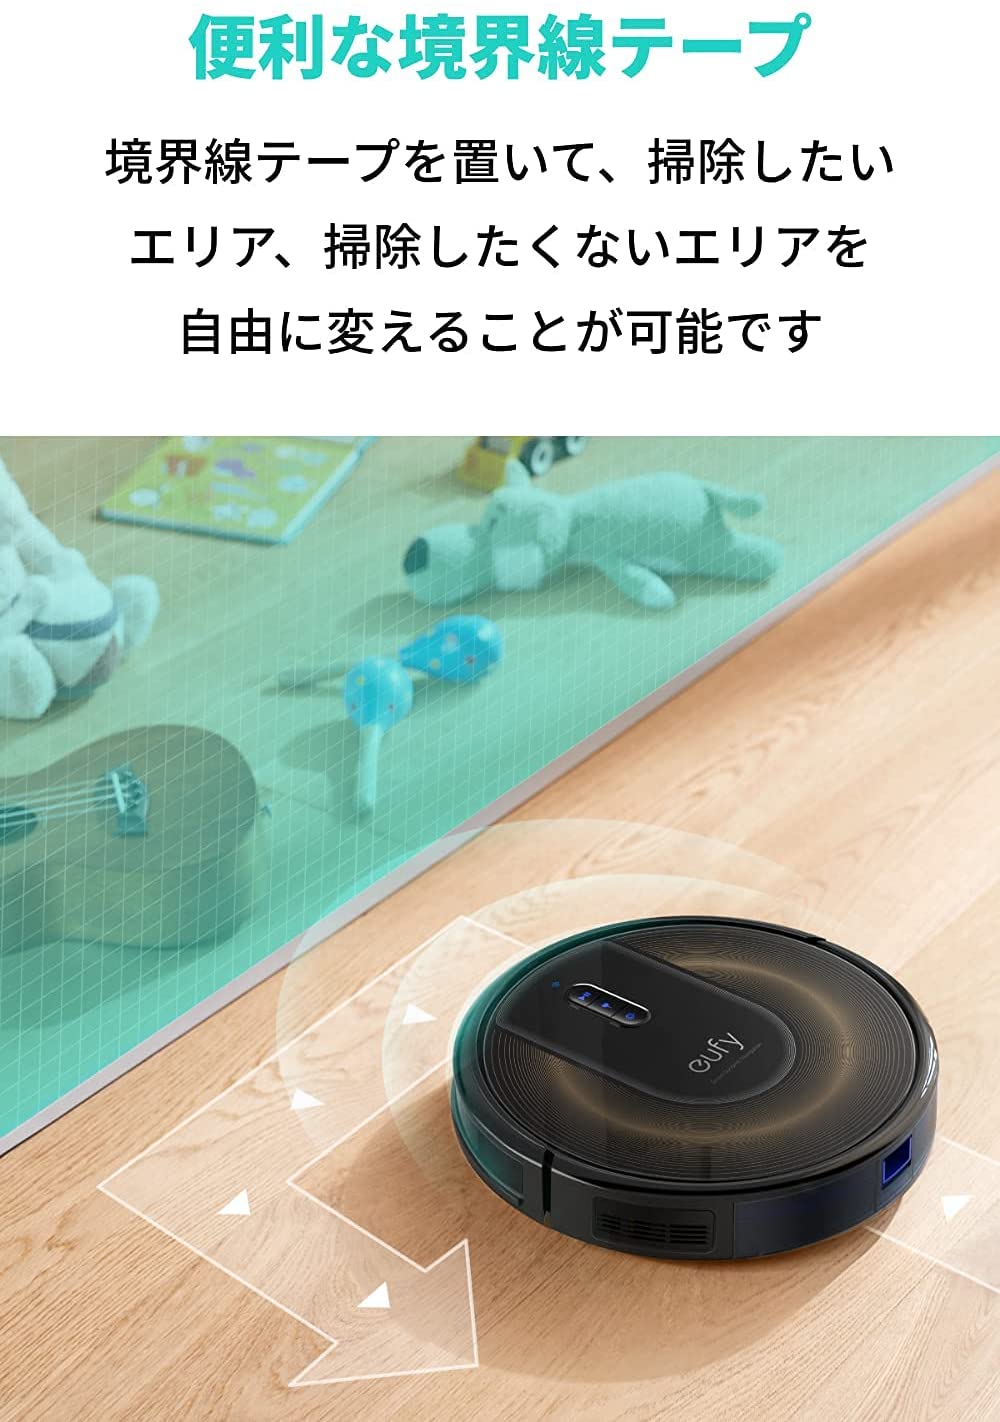 Anker Eufy (ユーフィ) RoboVac G30 (ロボット掃除機)【スマート・ダイナミック・ナビゲーション 2.0 Wi-Fi対応/超 